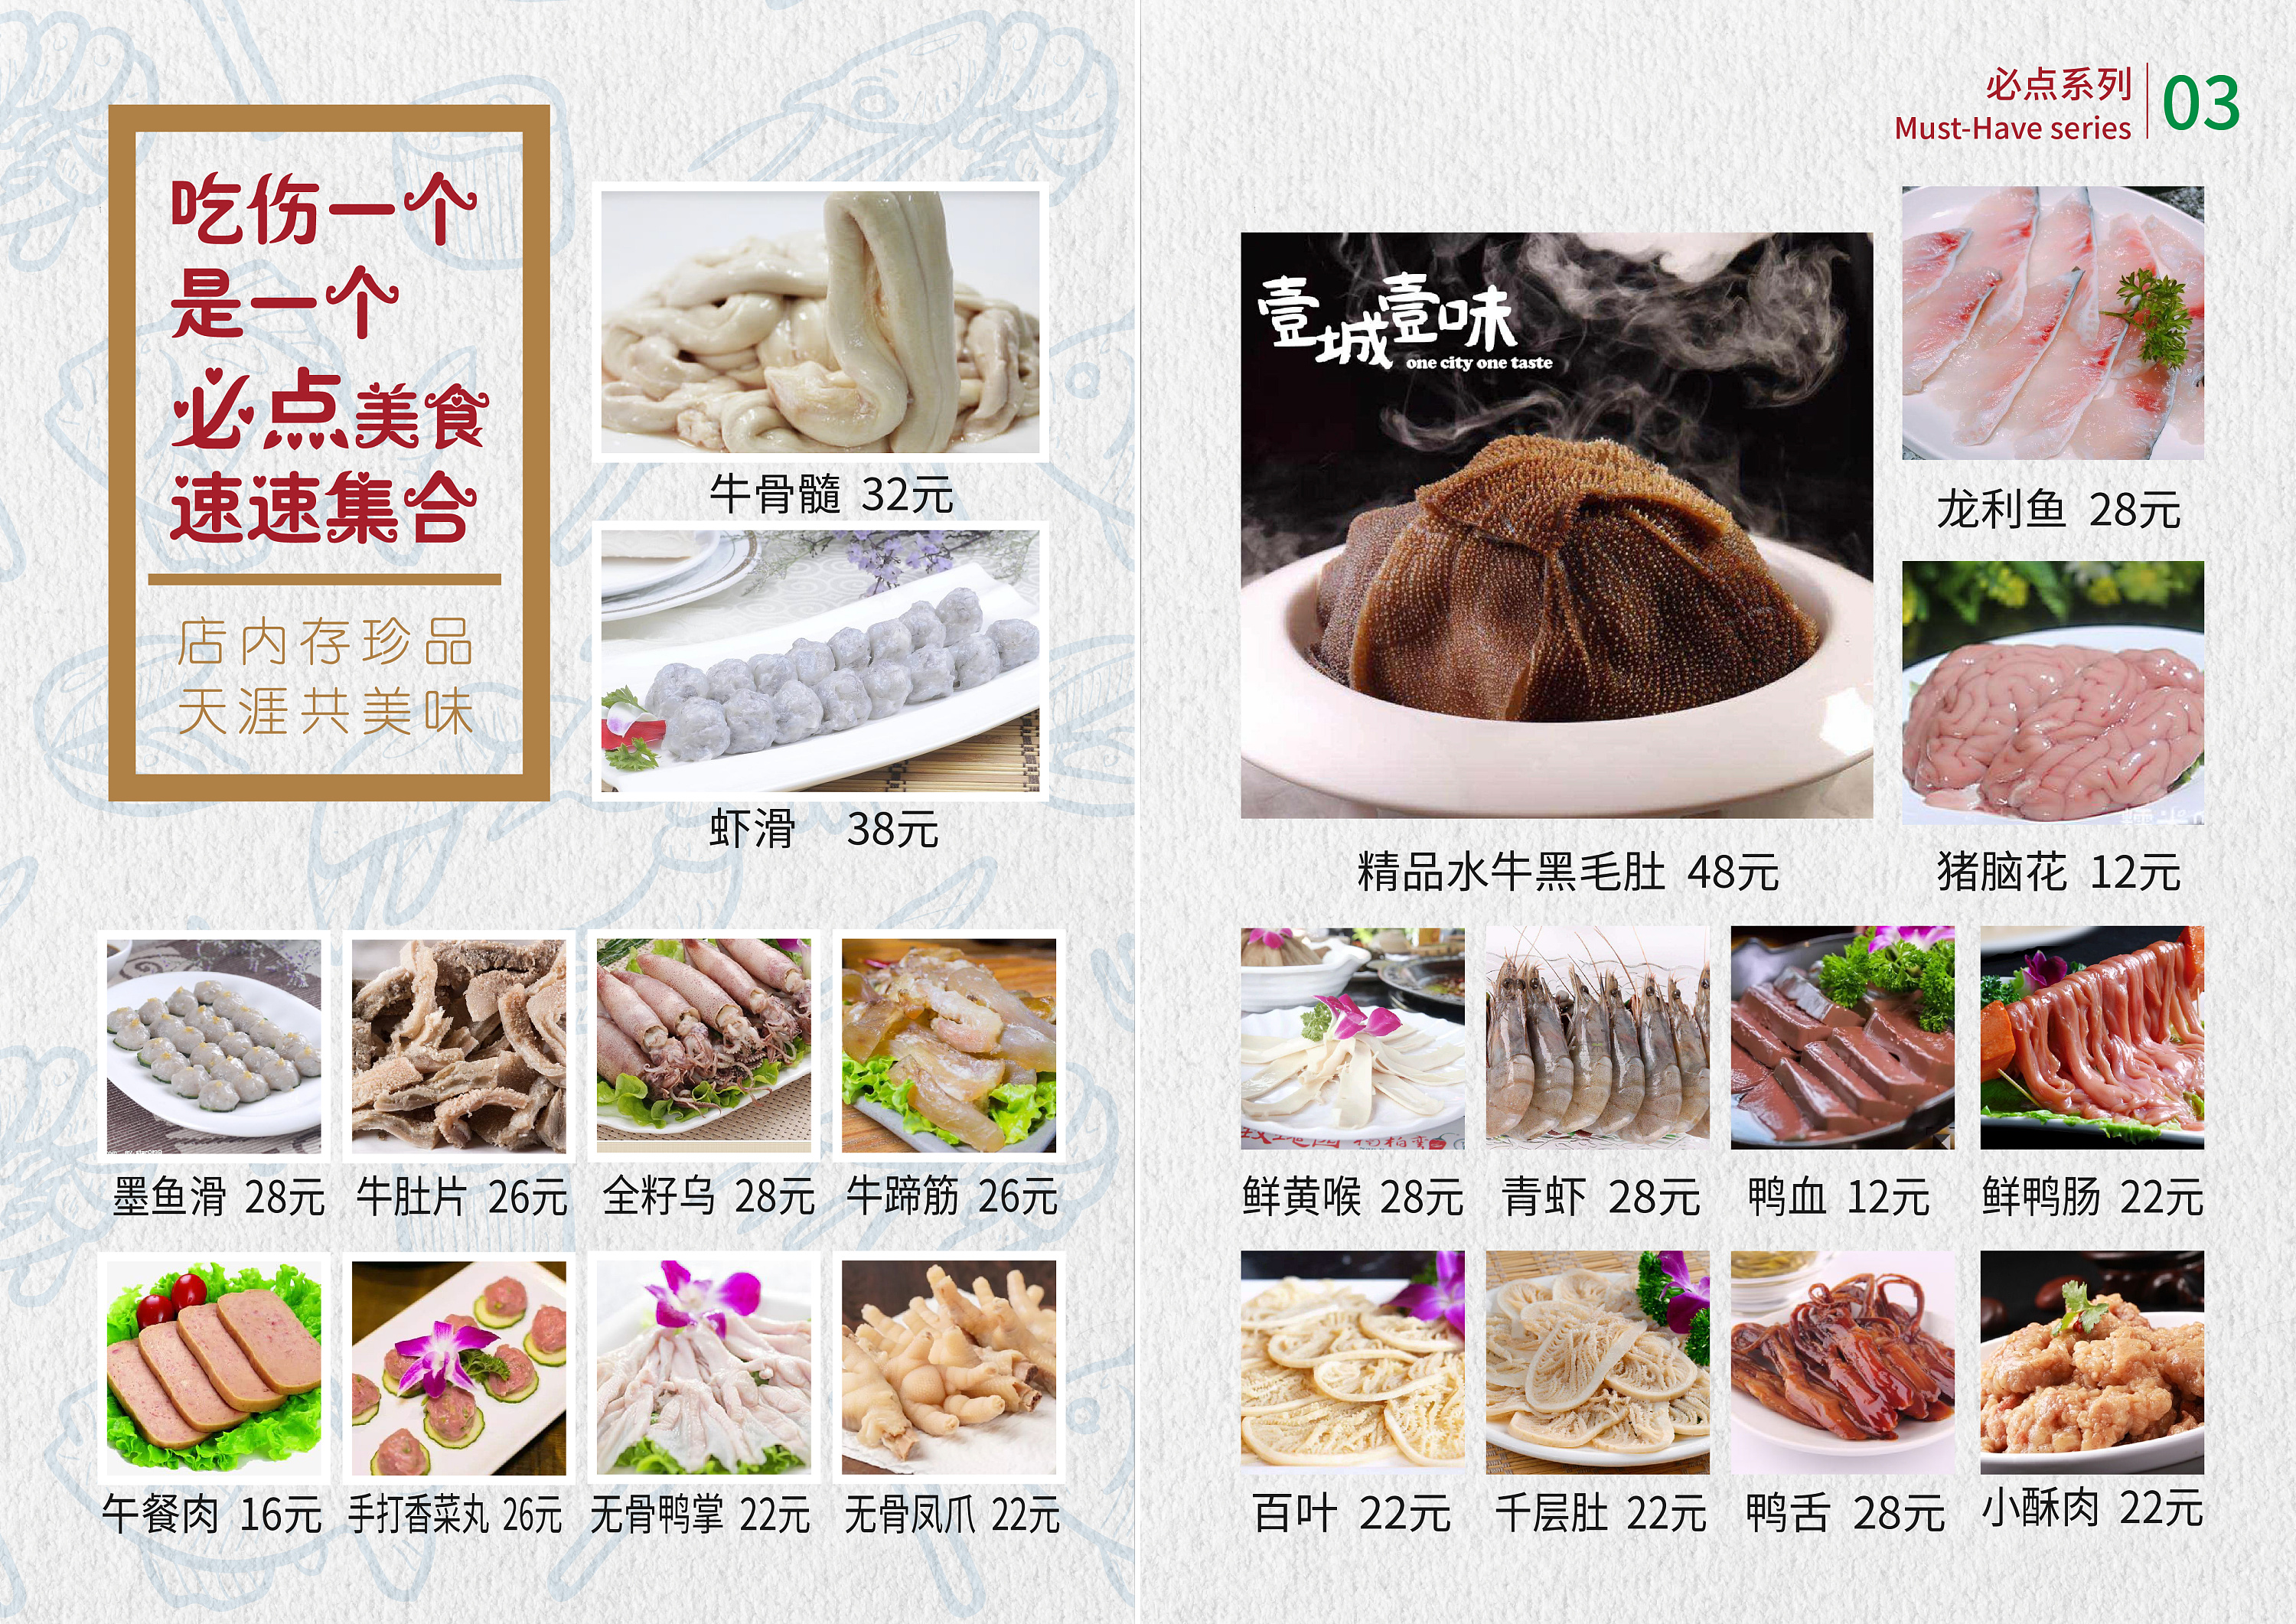 火锅食材超市 菜单图片